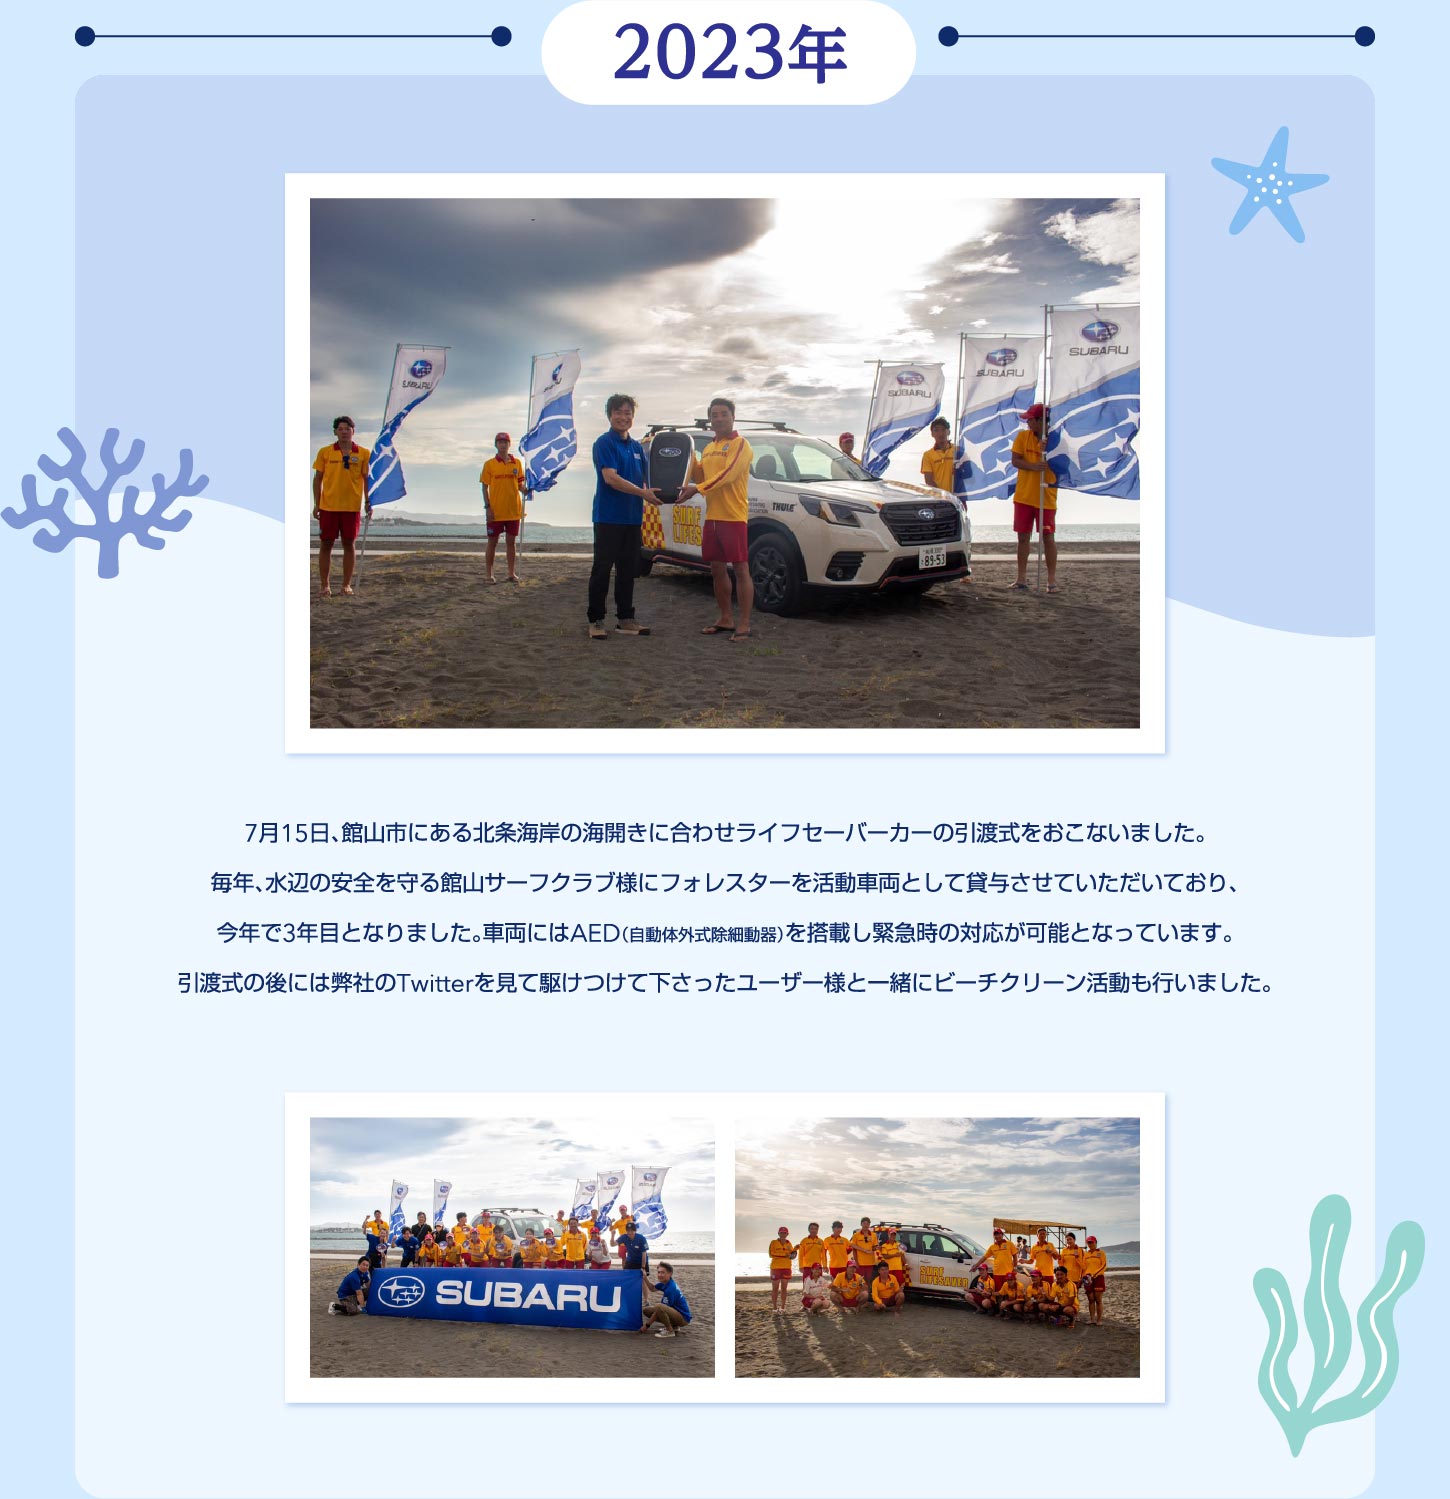 2023年7月15日、館山市にある北条海岸の海開きに合わせライフセーバーカーの引渡式をおこないました。